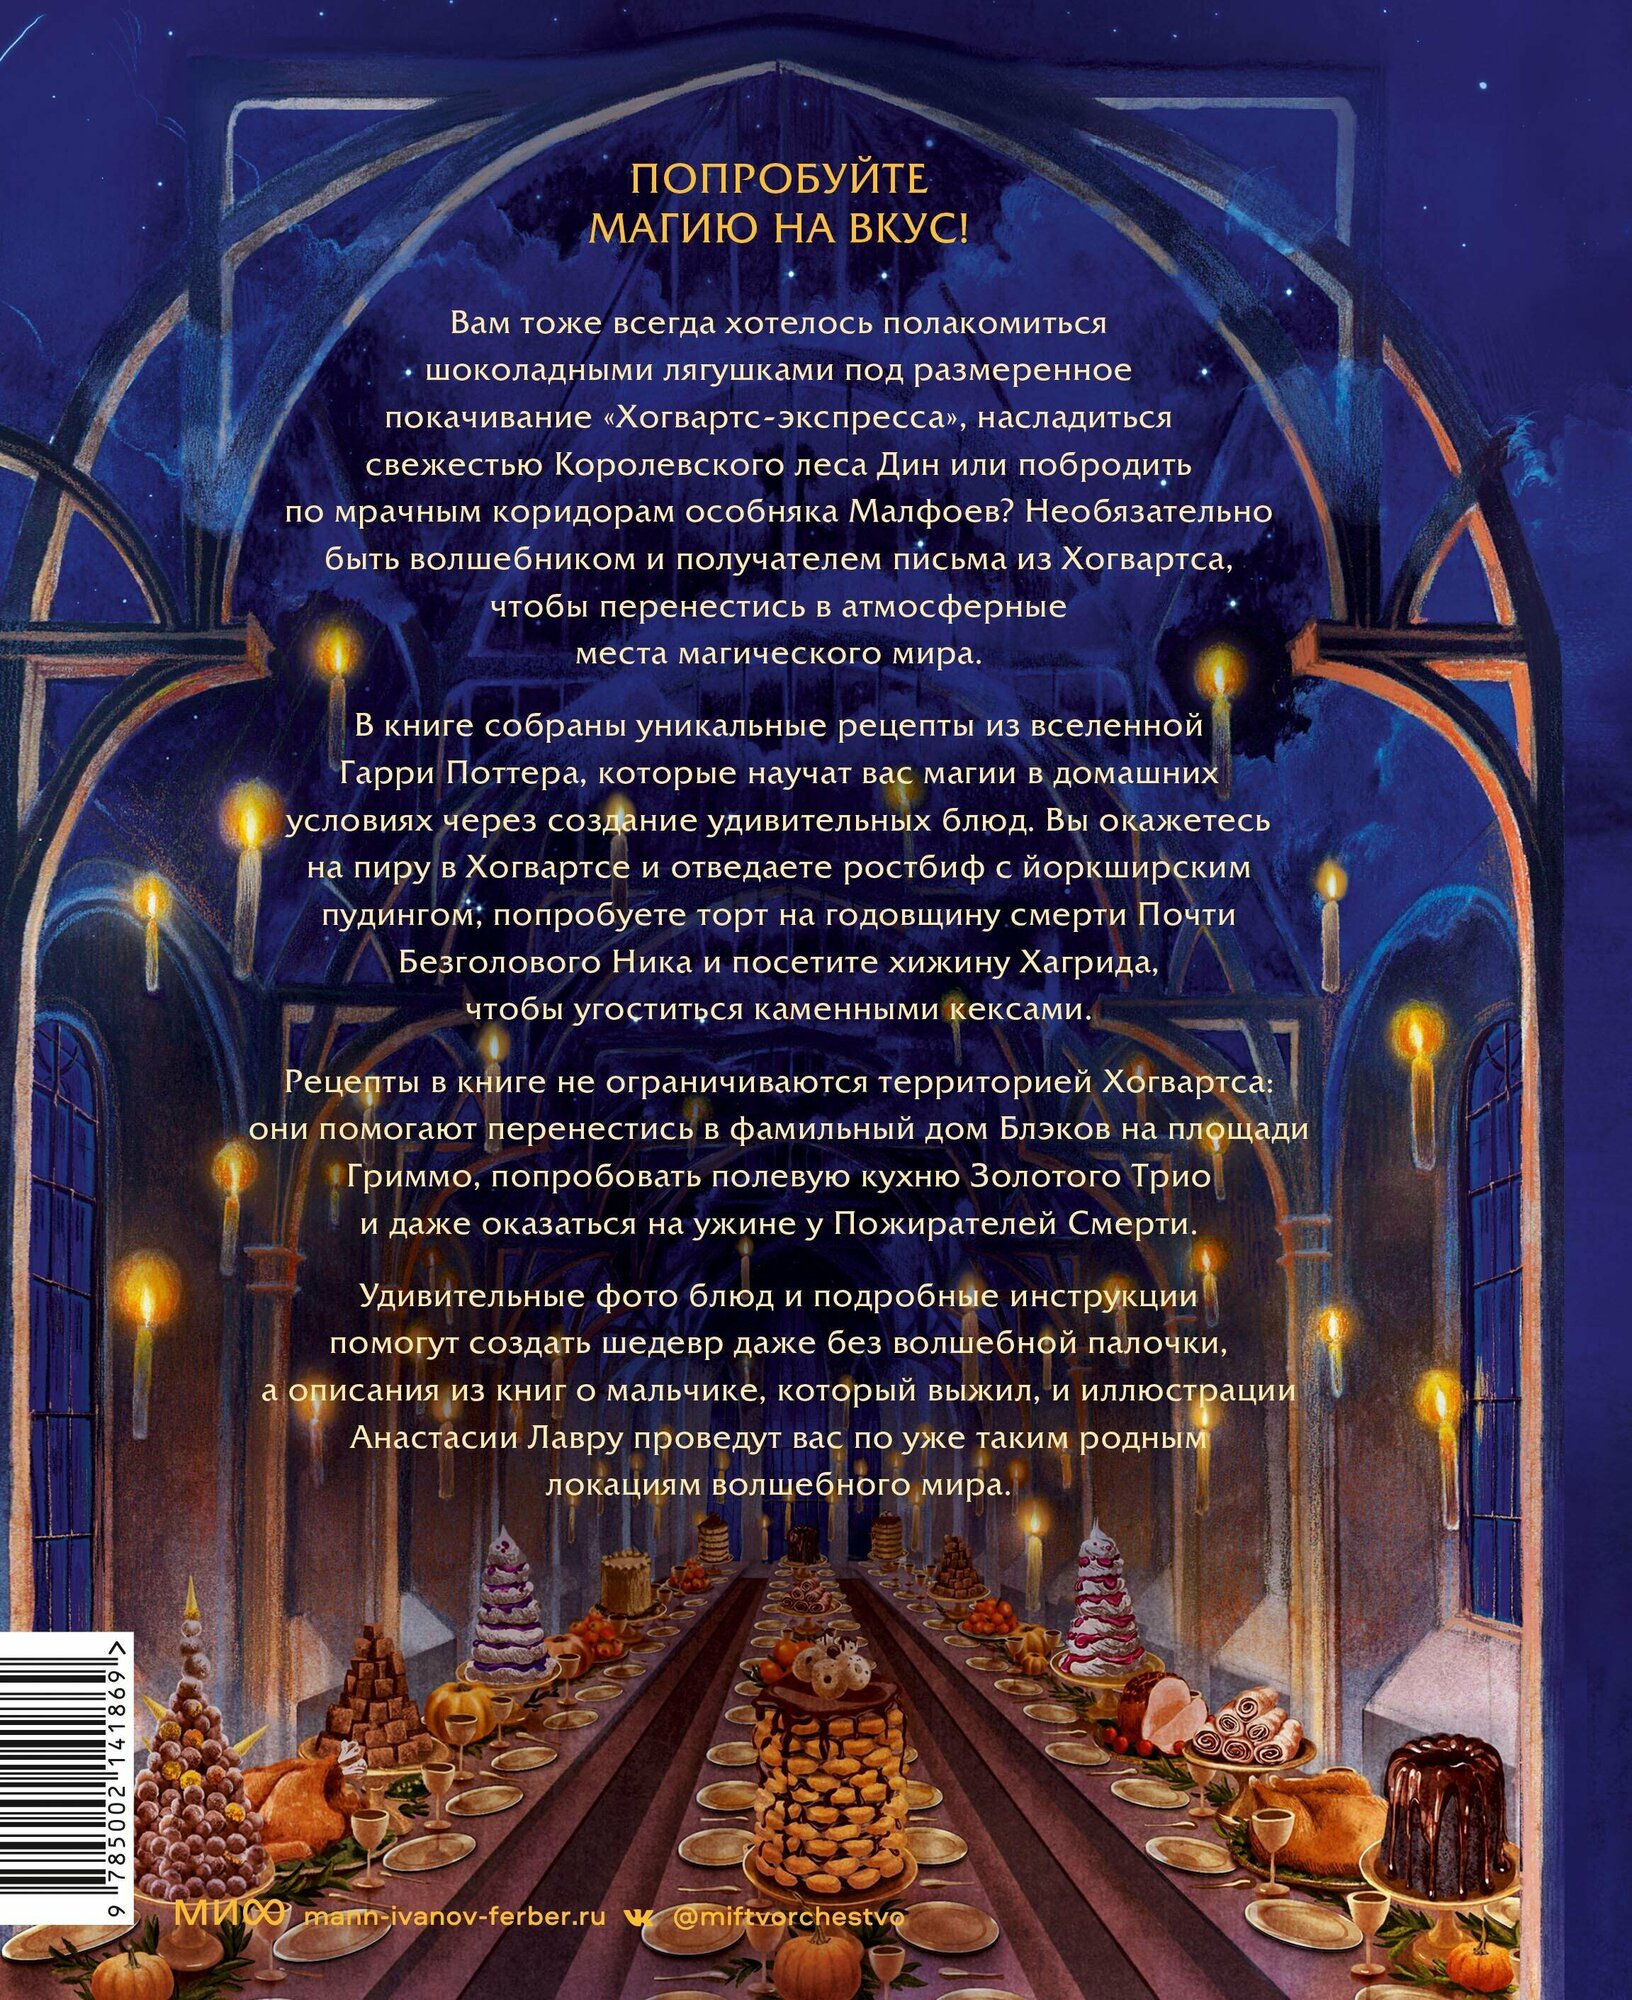 Большая поваренная книга Гарри Поттера: от праздничных пиров Хогвартса до камерных посиделок в "Норе" - фото №2